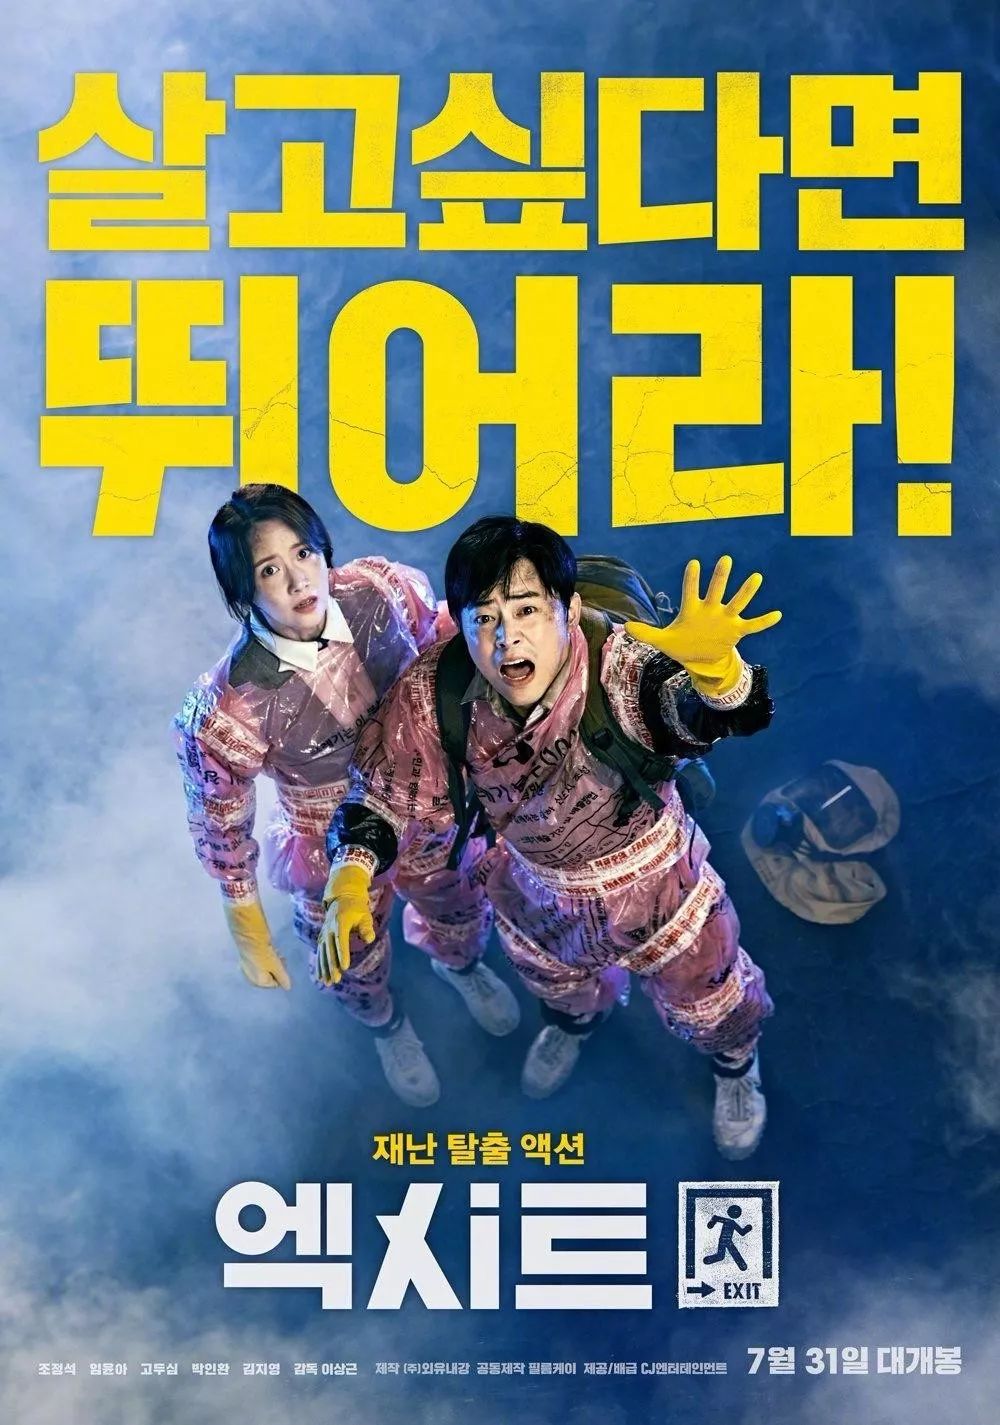 在大热的韩国商业片《极限逃生》中,林允儿就化身一位徒手攀岩的美女